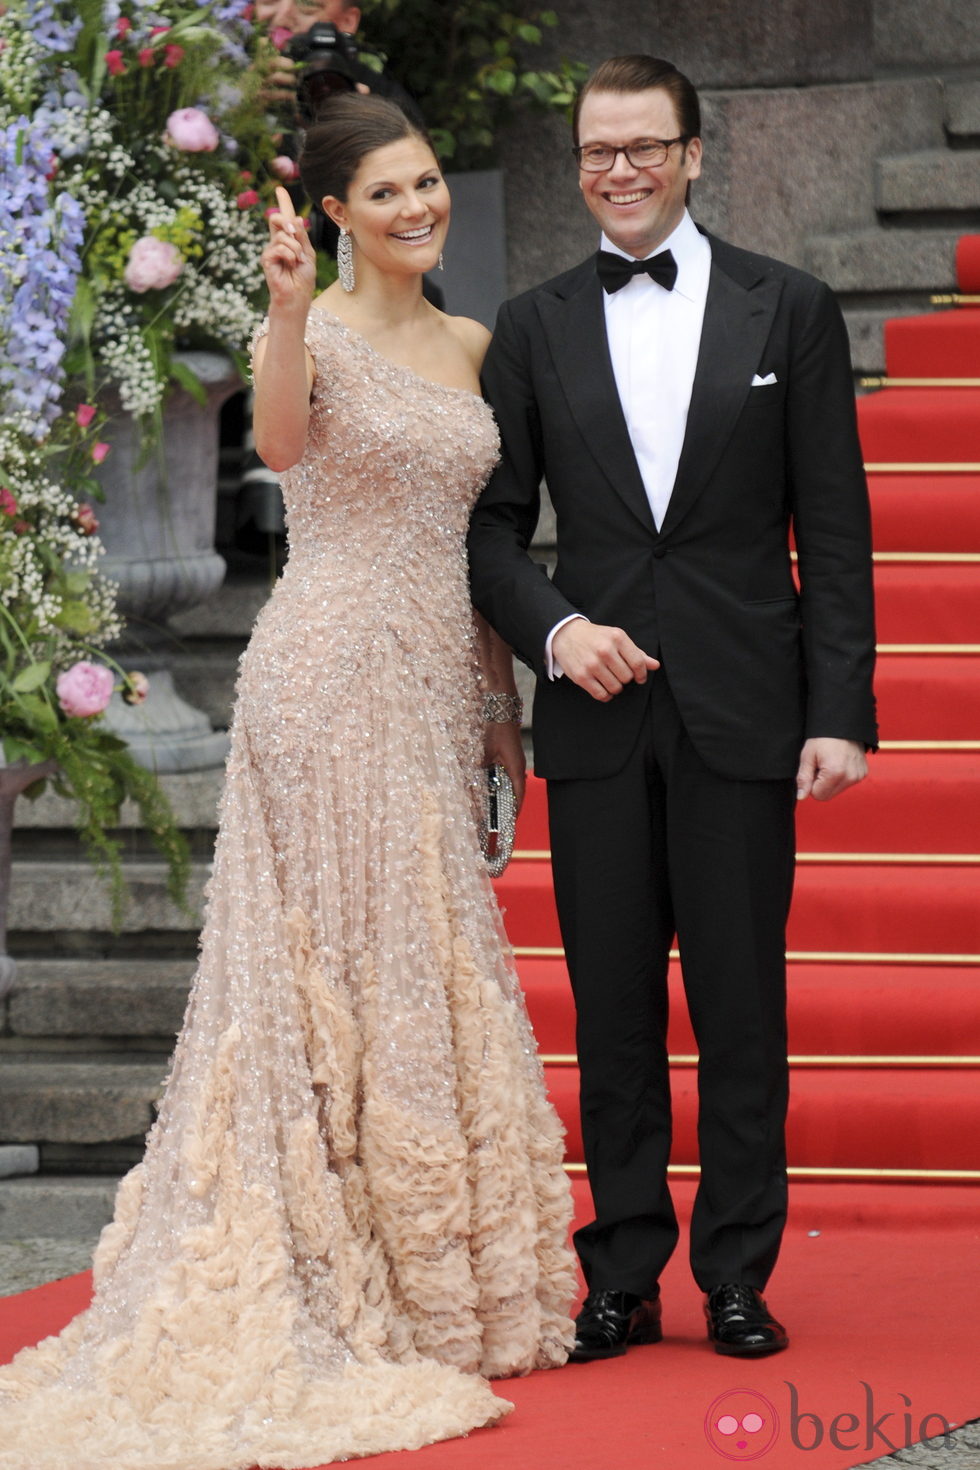 Victoria de Suecia y Daniel Westling en la fiesta anterior a su boda en 2010